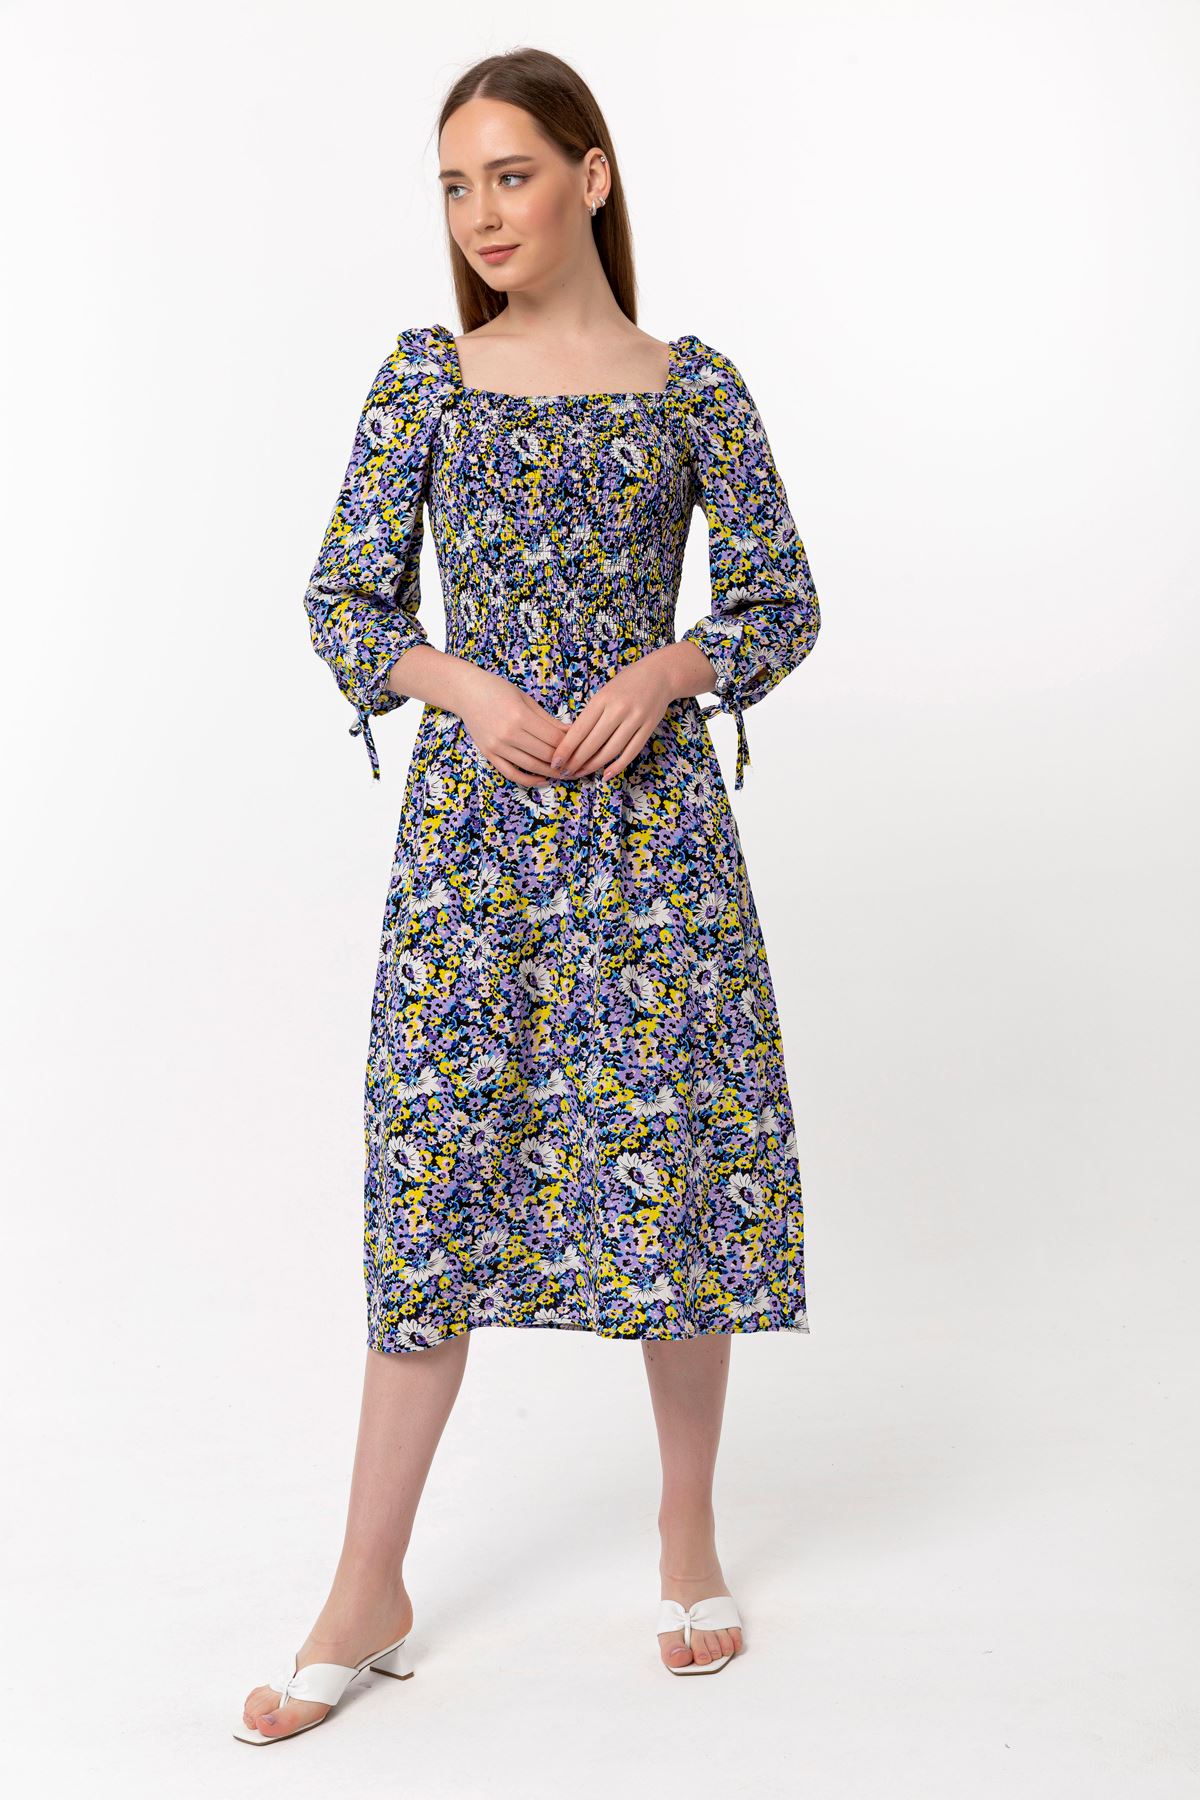 فستان نسائي قماش فيسكون 3/4 الحجم طوق مربع ميدي ضيق زهرة مقرمشة - ارجواني